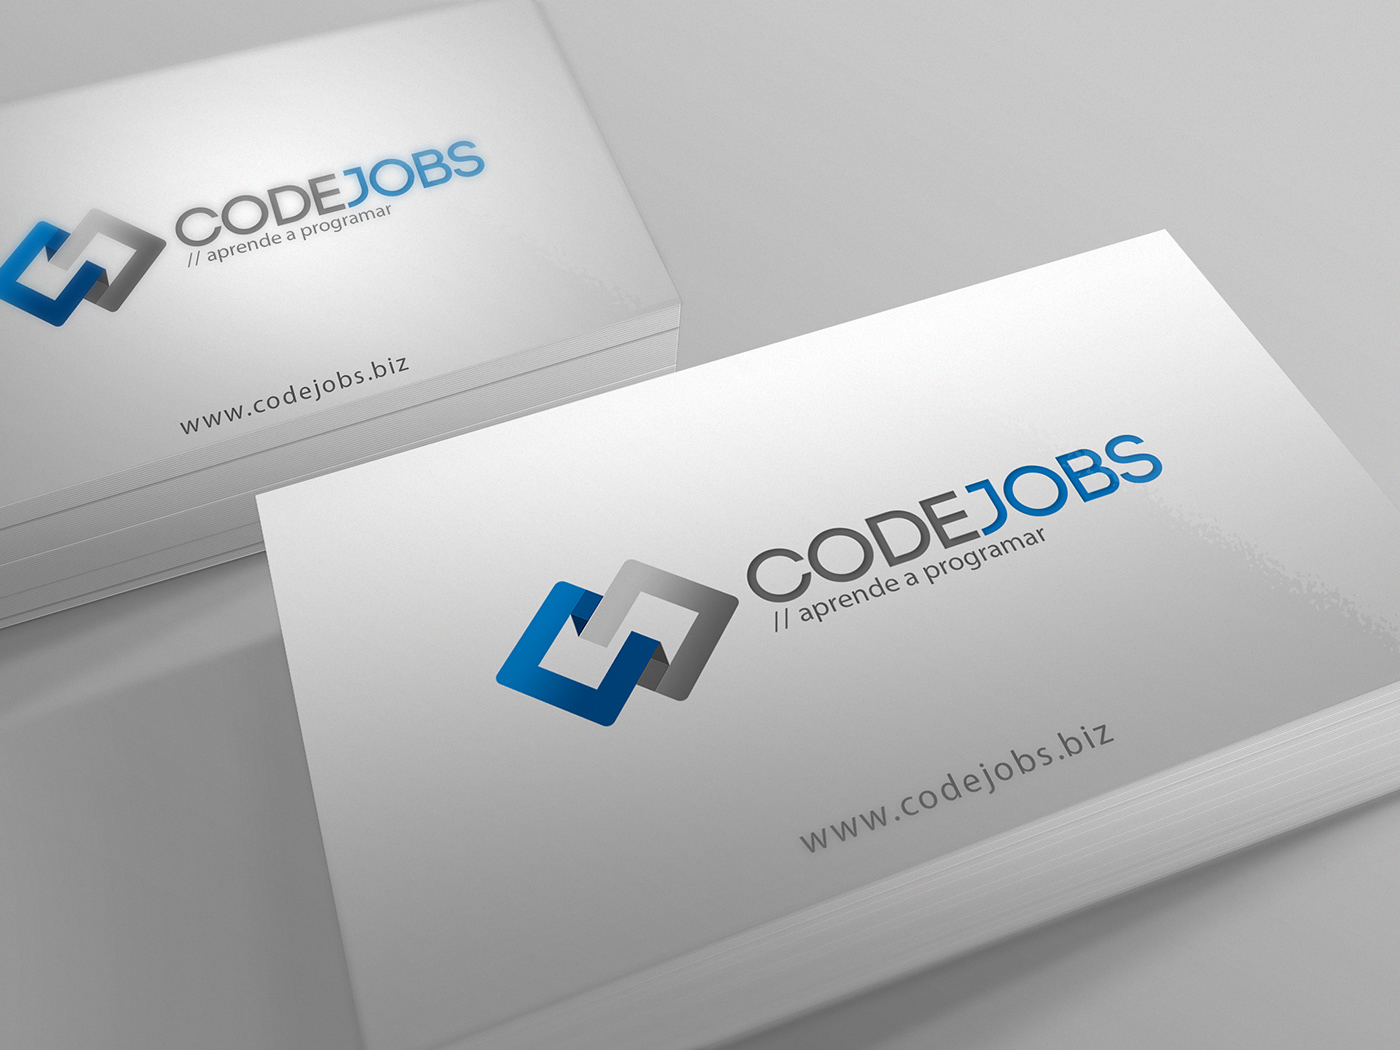 codigo Jobs CodeJobs logo